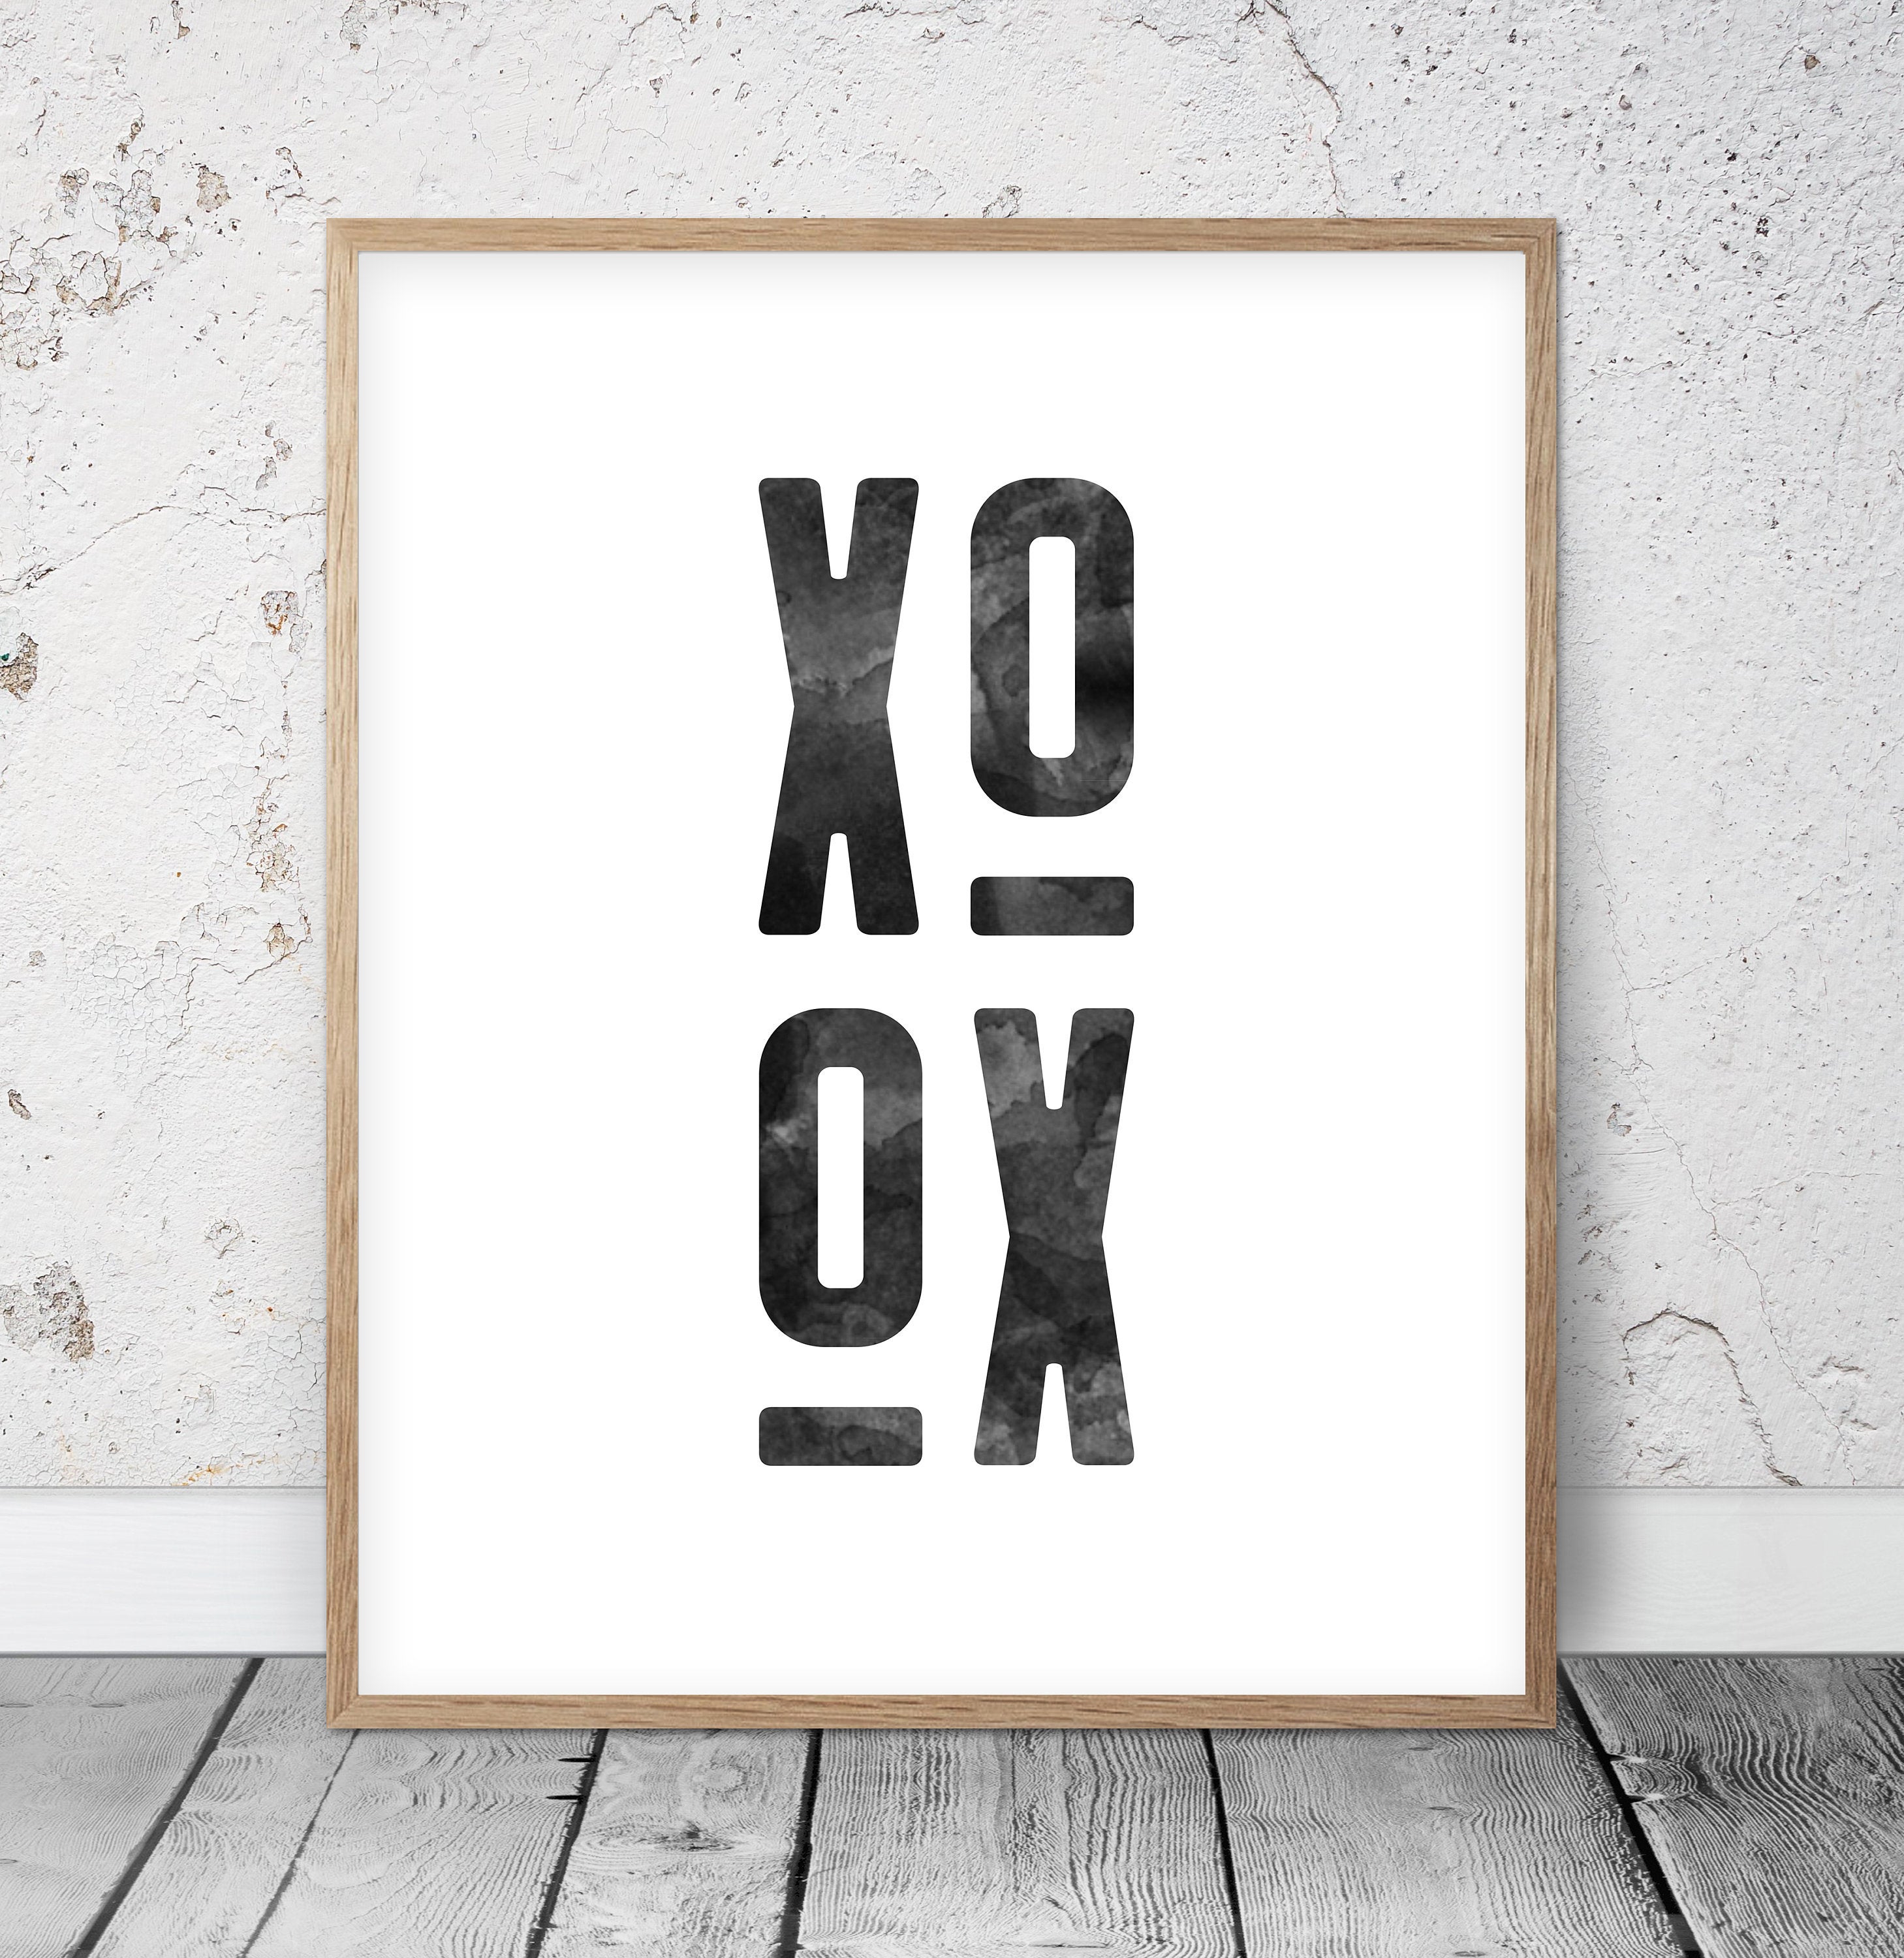 XO, XOXO Print Poster, Modern Office Art, Wall Art, Room Wall Art Decor